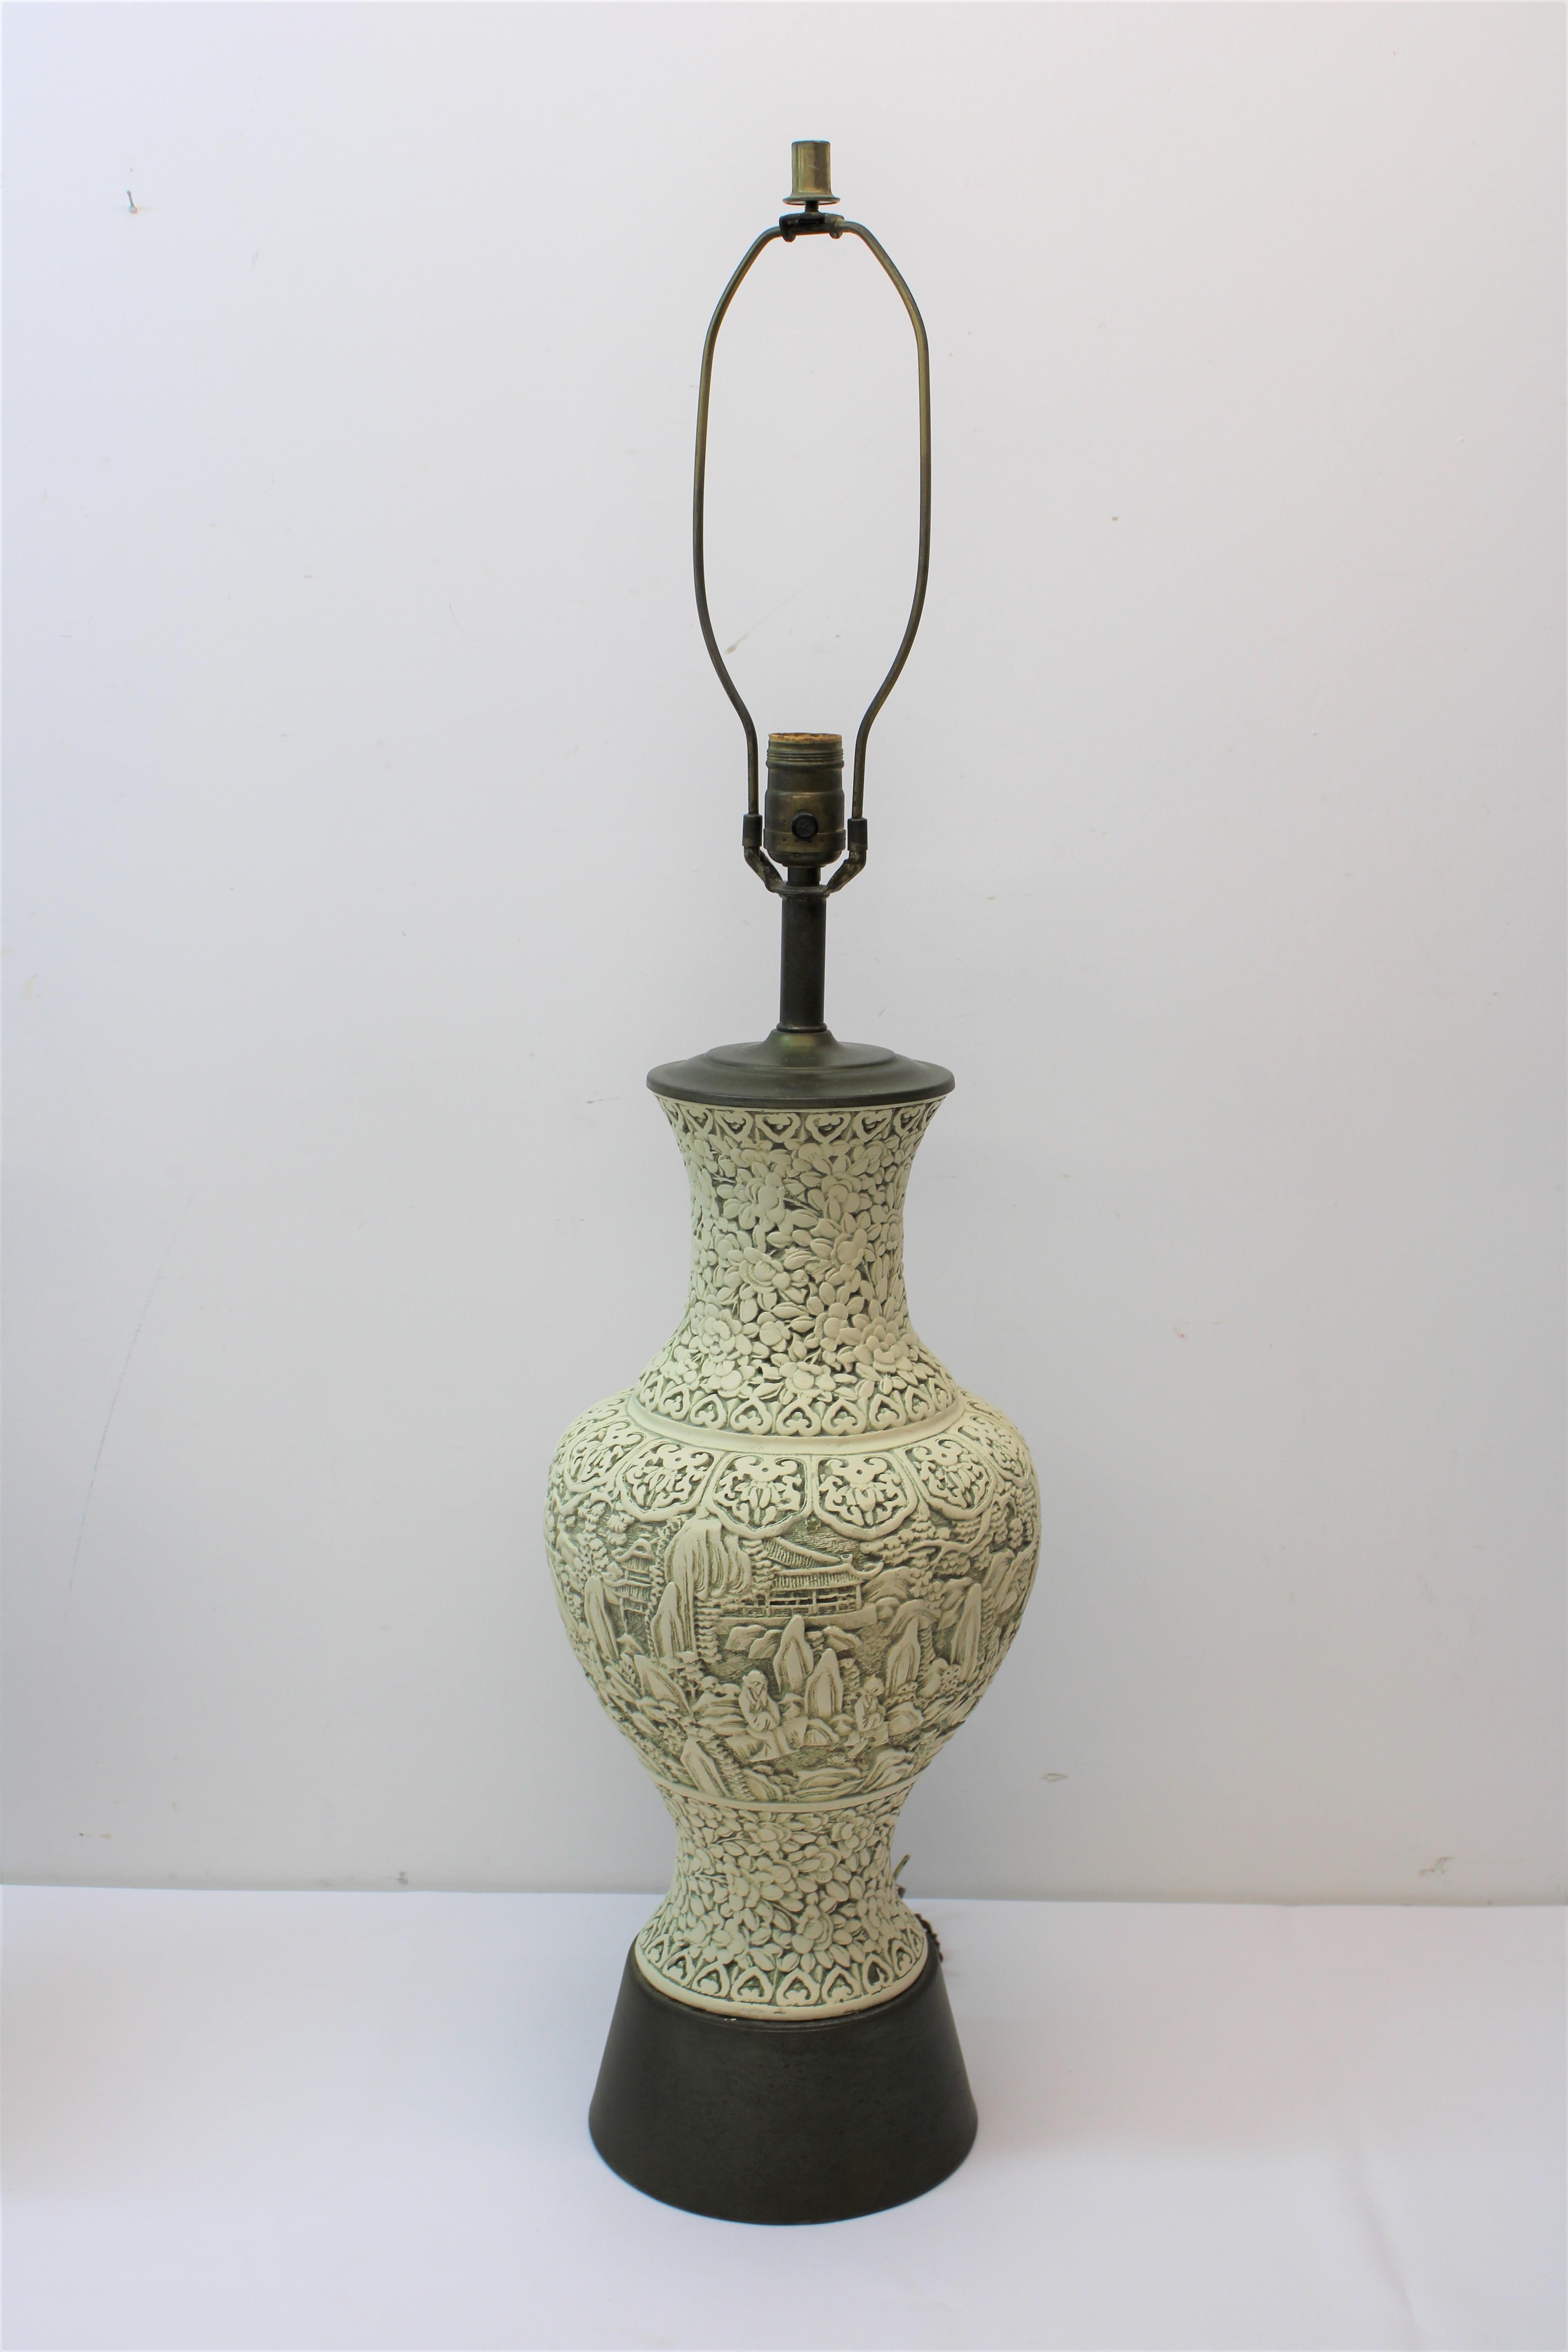 C. 20e siècle : belles lampes asiatiques en porcelaine peinte à la main avec bases en bois sculpté.